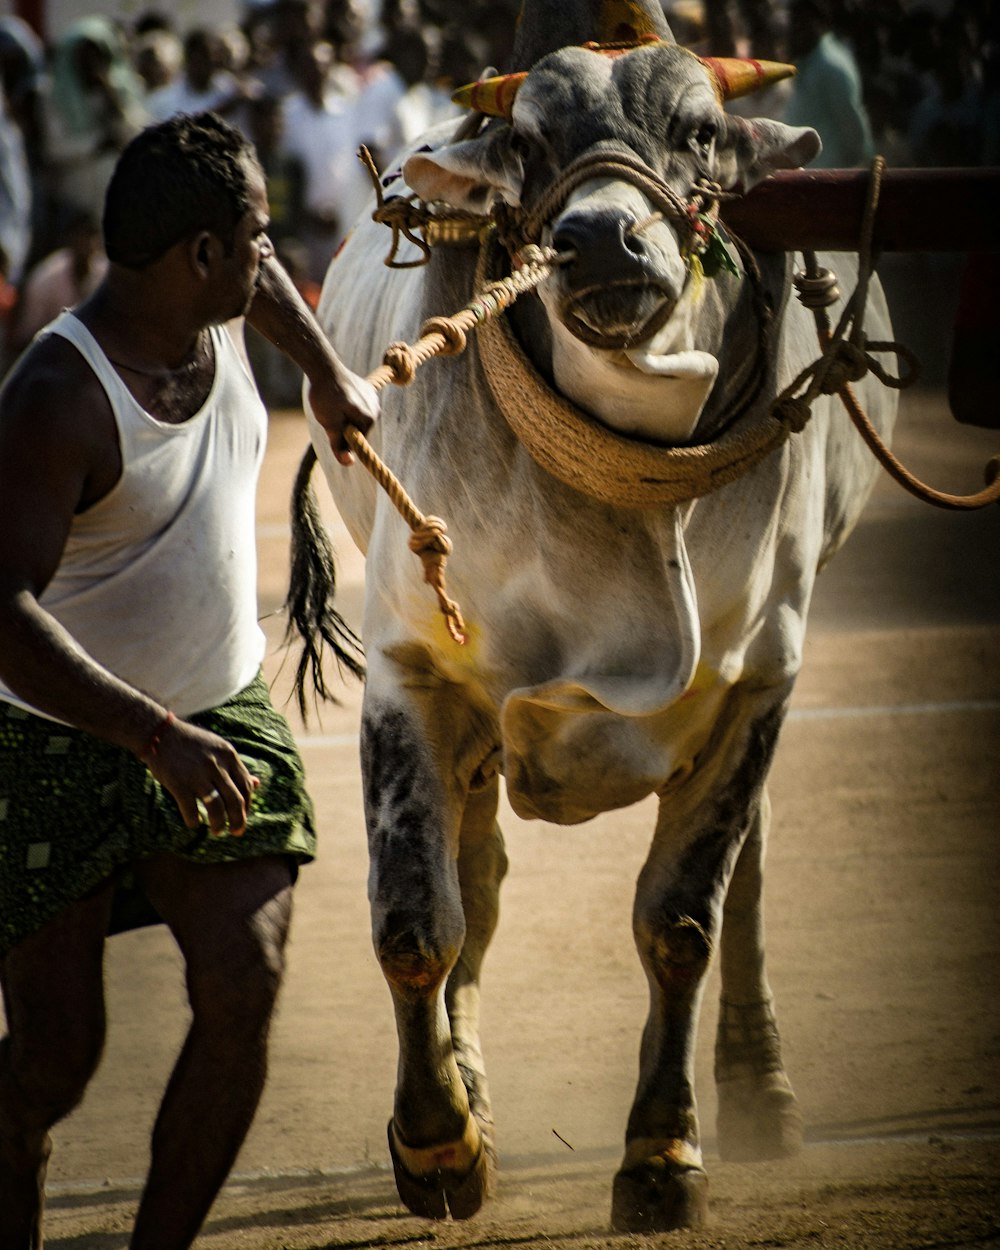 a man leading a cow down a street